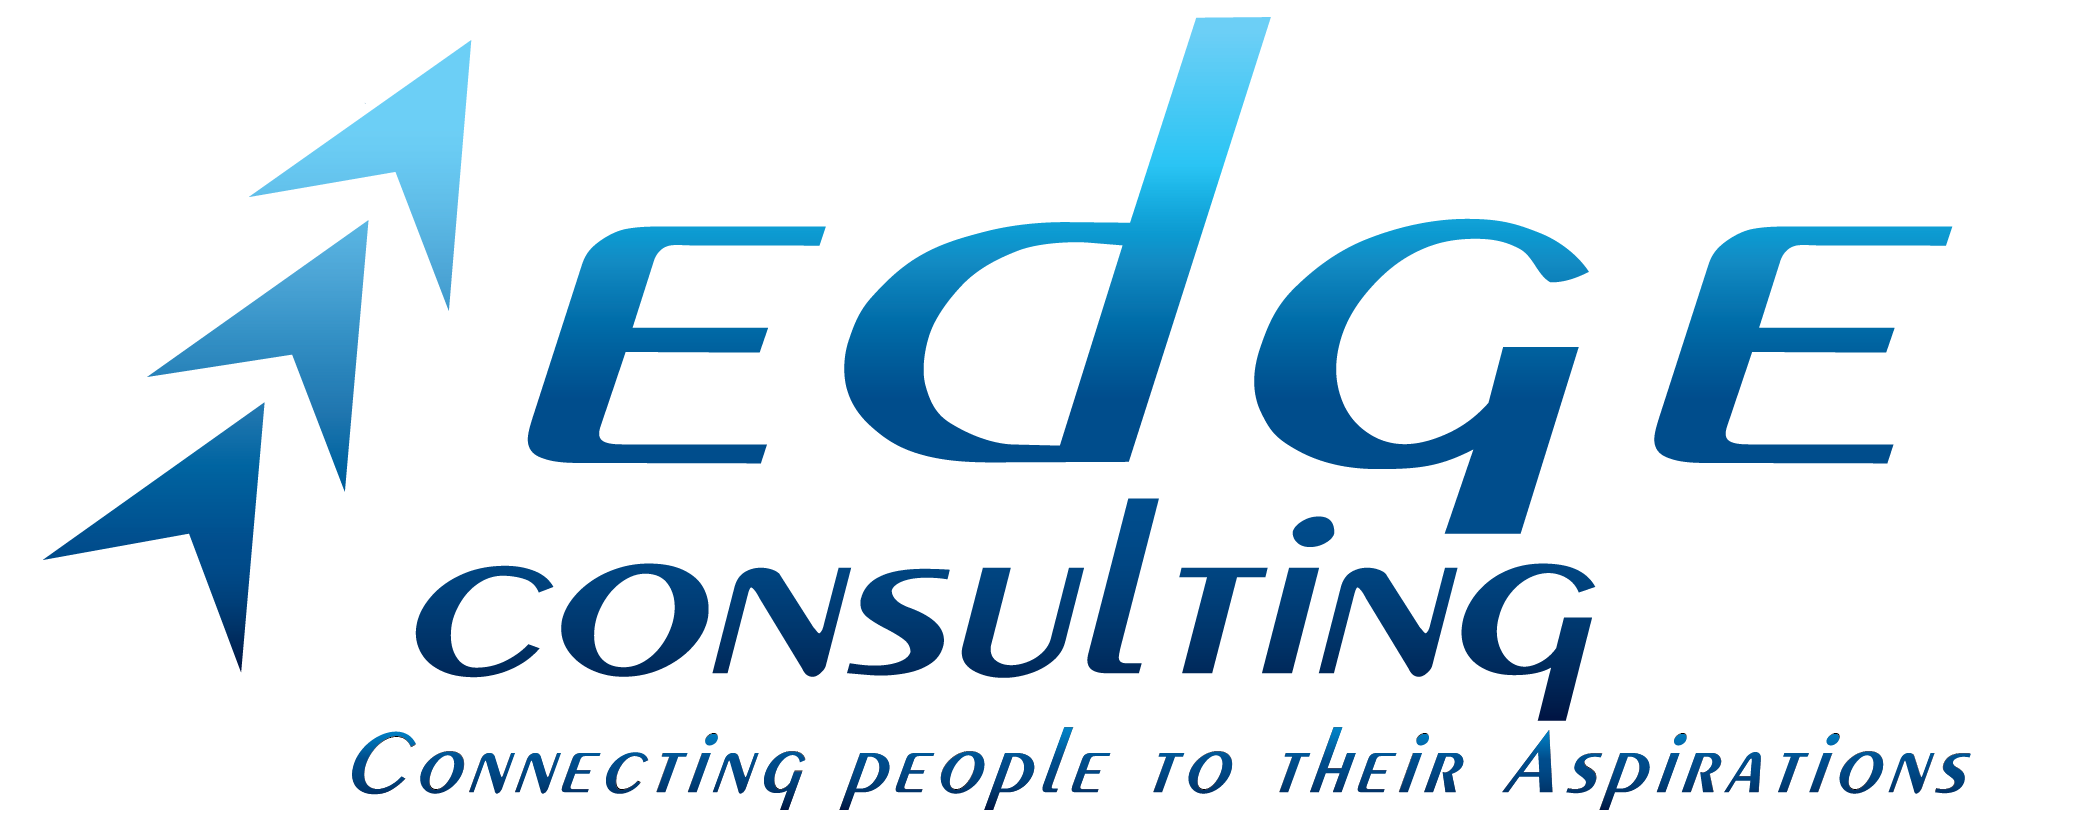 Edge consulting logo